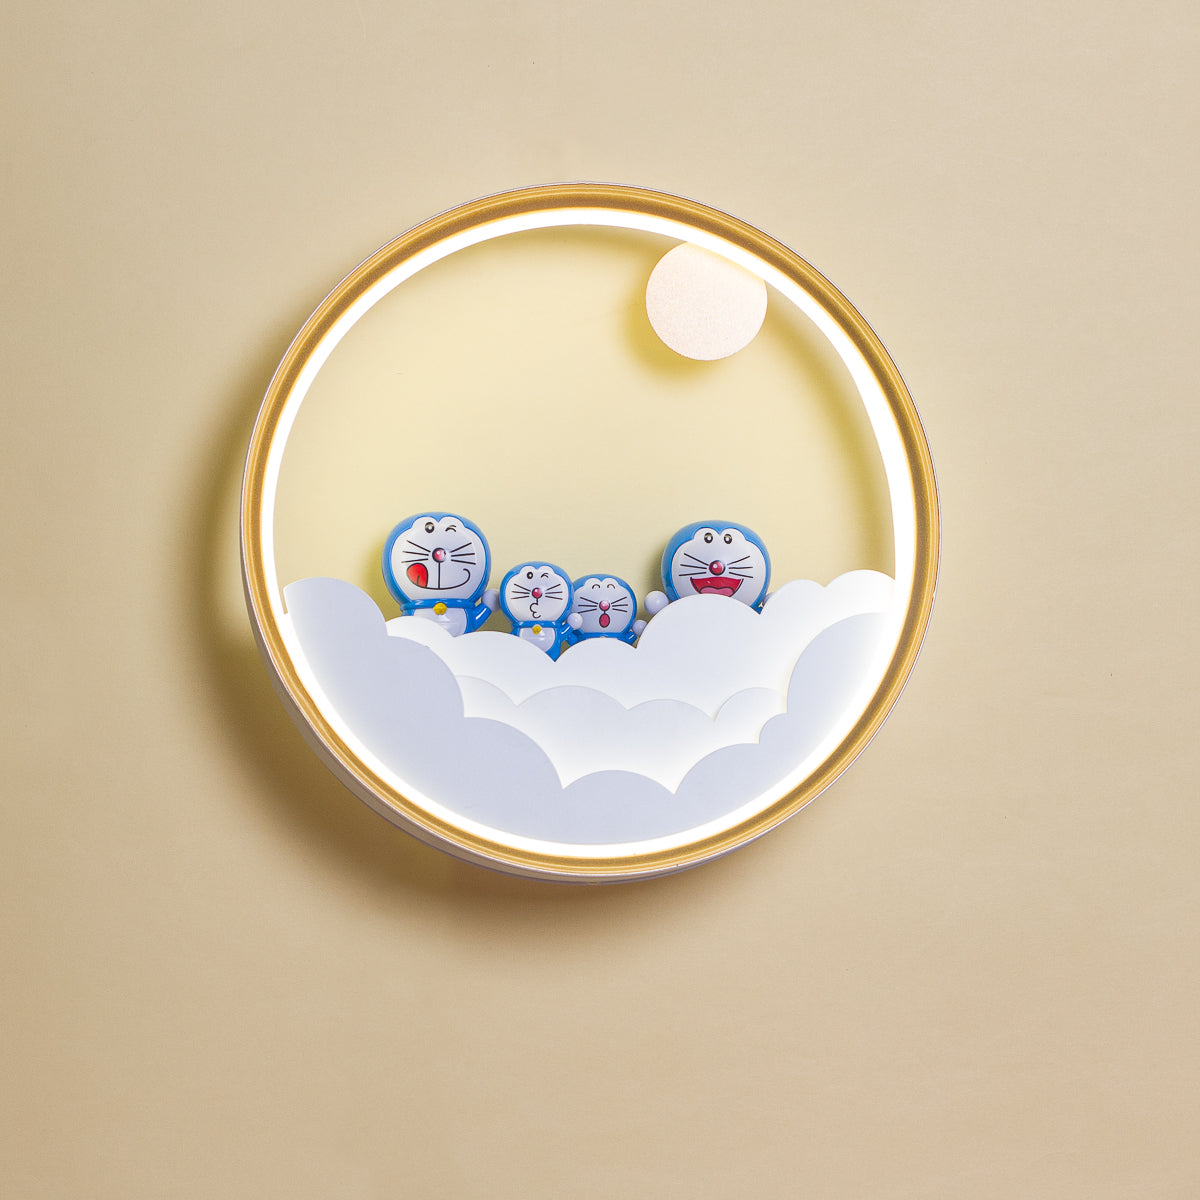 Doraemon Family LED Wall Light